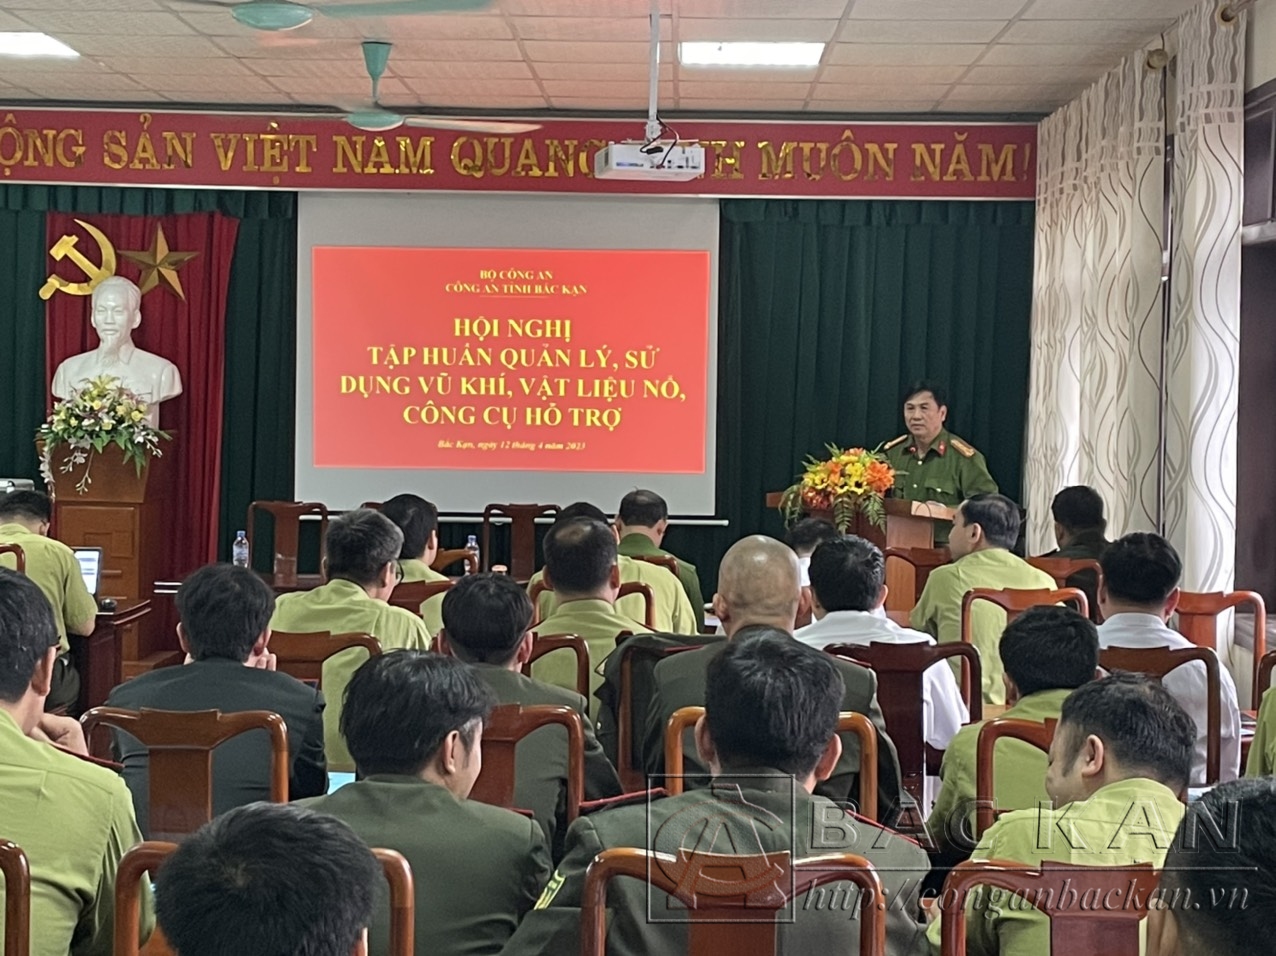 Đại tá Nguyễn Thanh Tuân, Phó Giám đốc Công an tỉnh phát biểu khai mạc lớp tập huấn